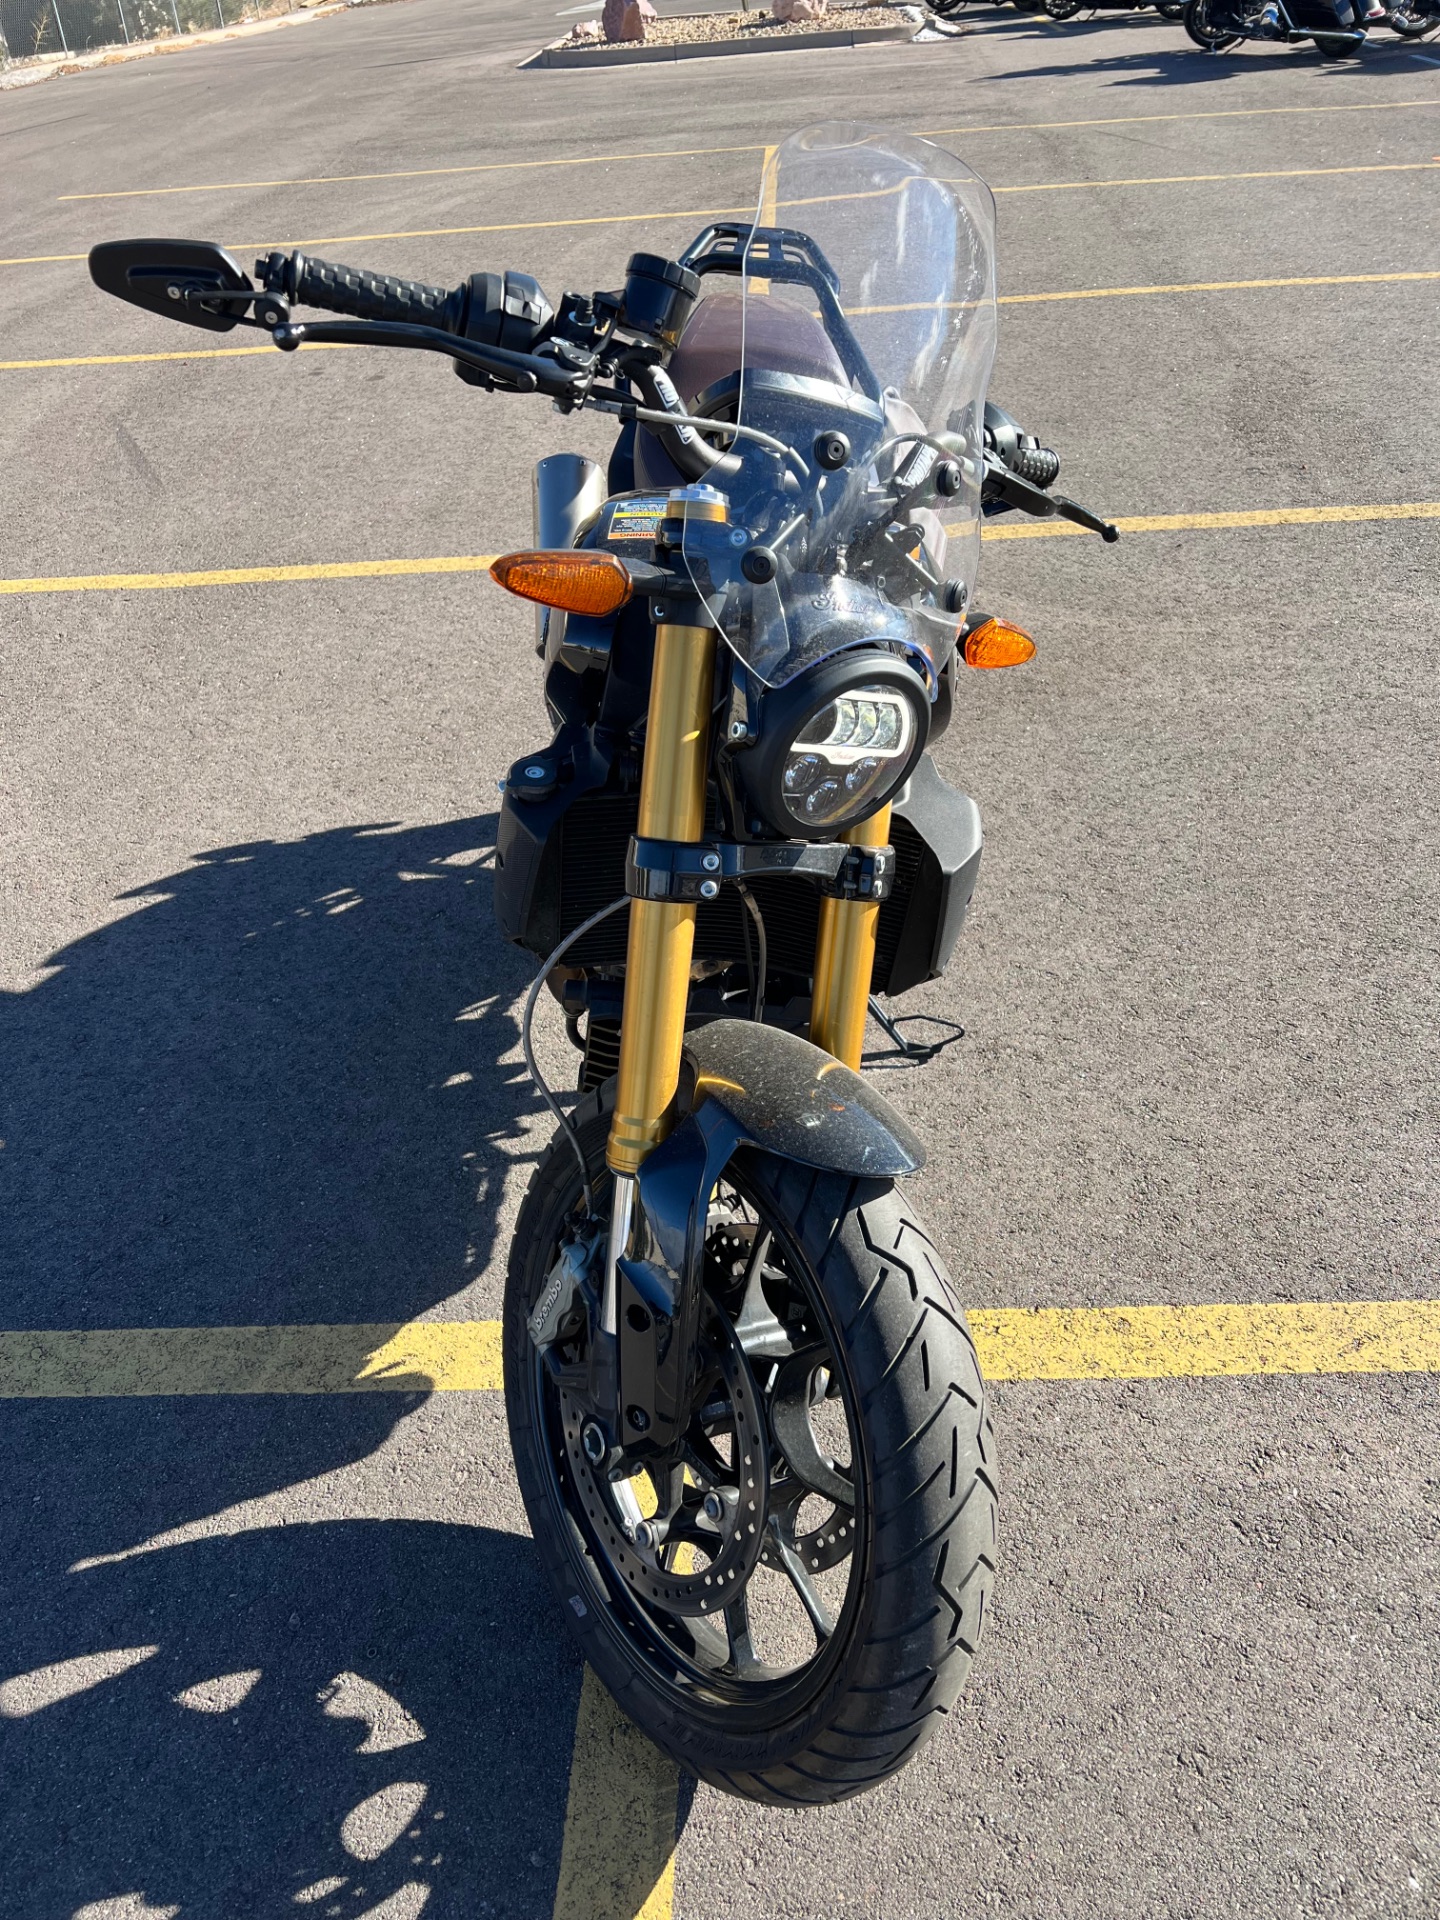 2019 Indian Motorcycle FTR™ 1200 in Colorado Springs, Colorado - Photo 3